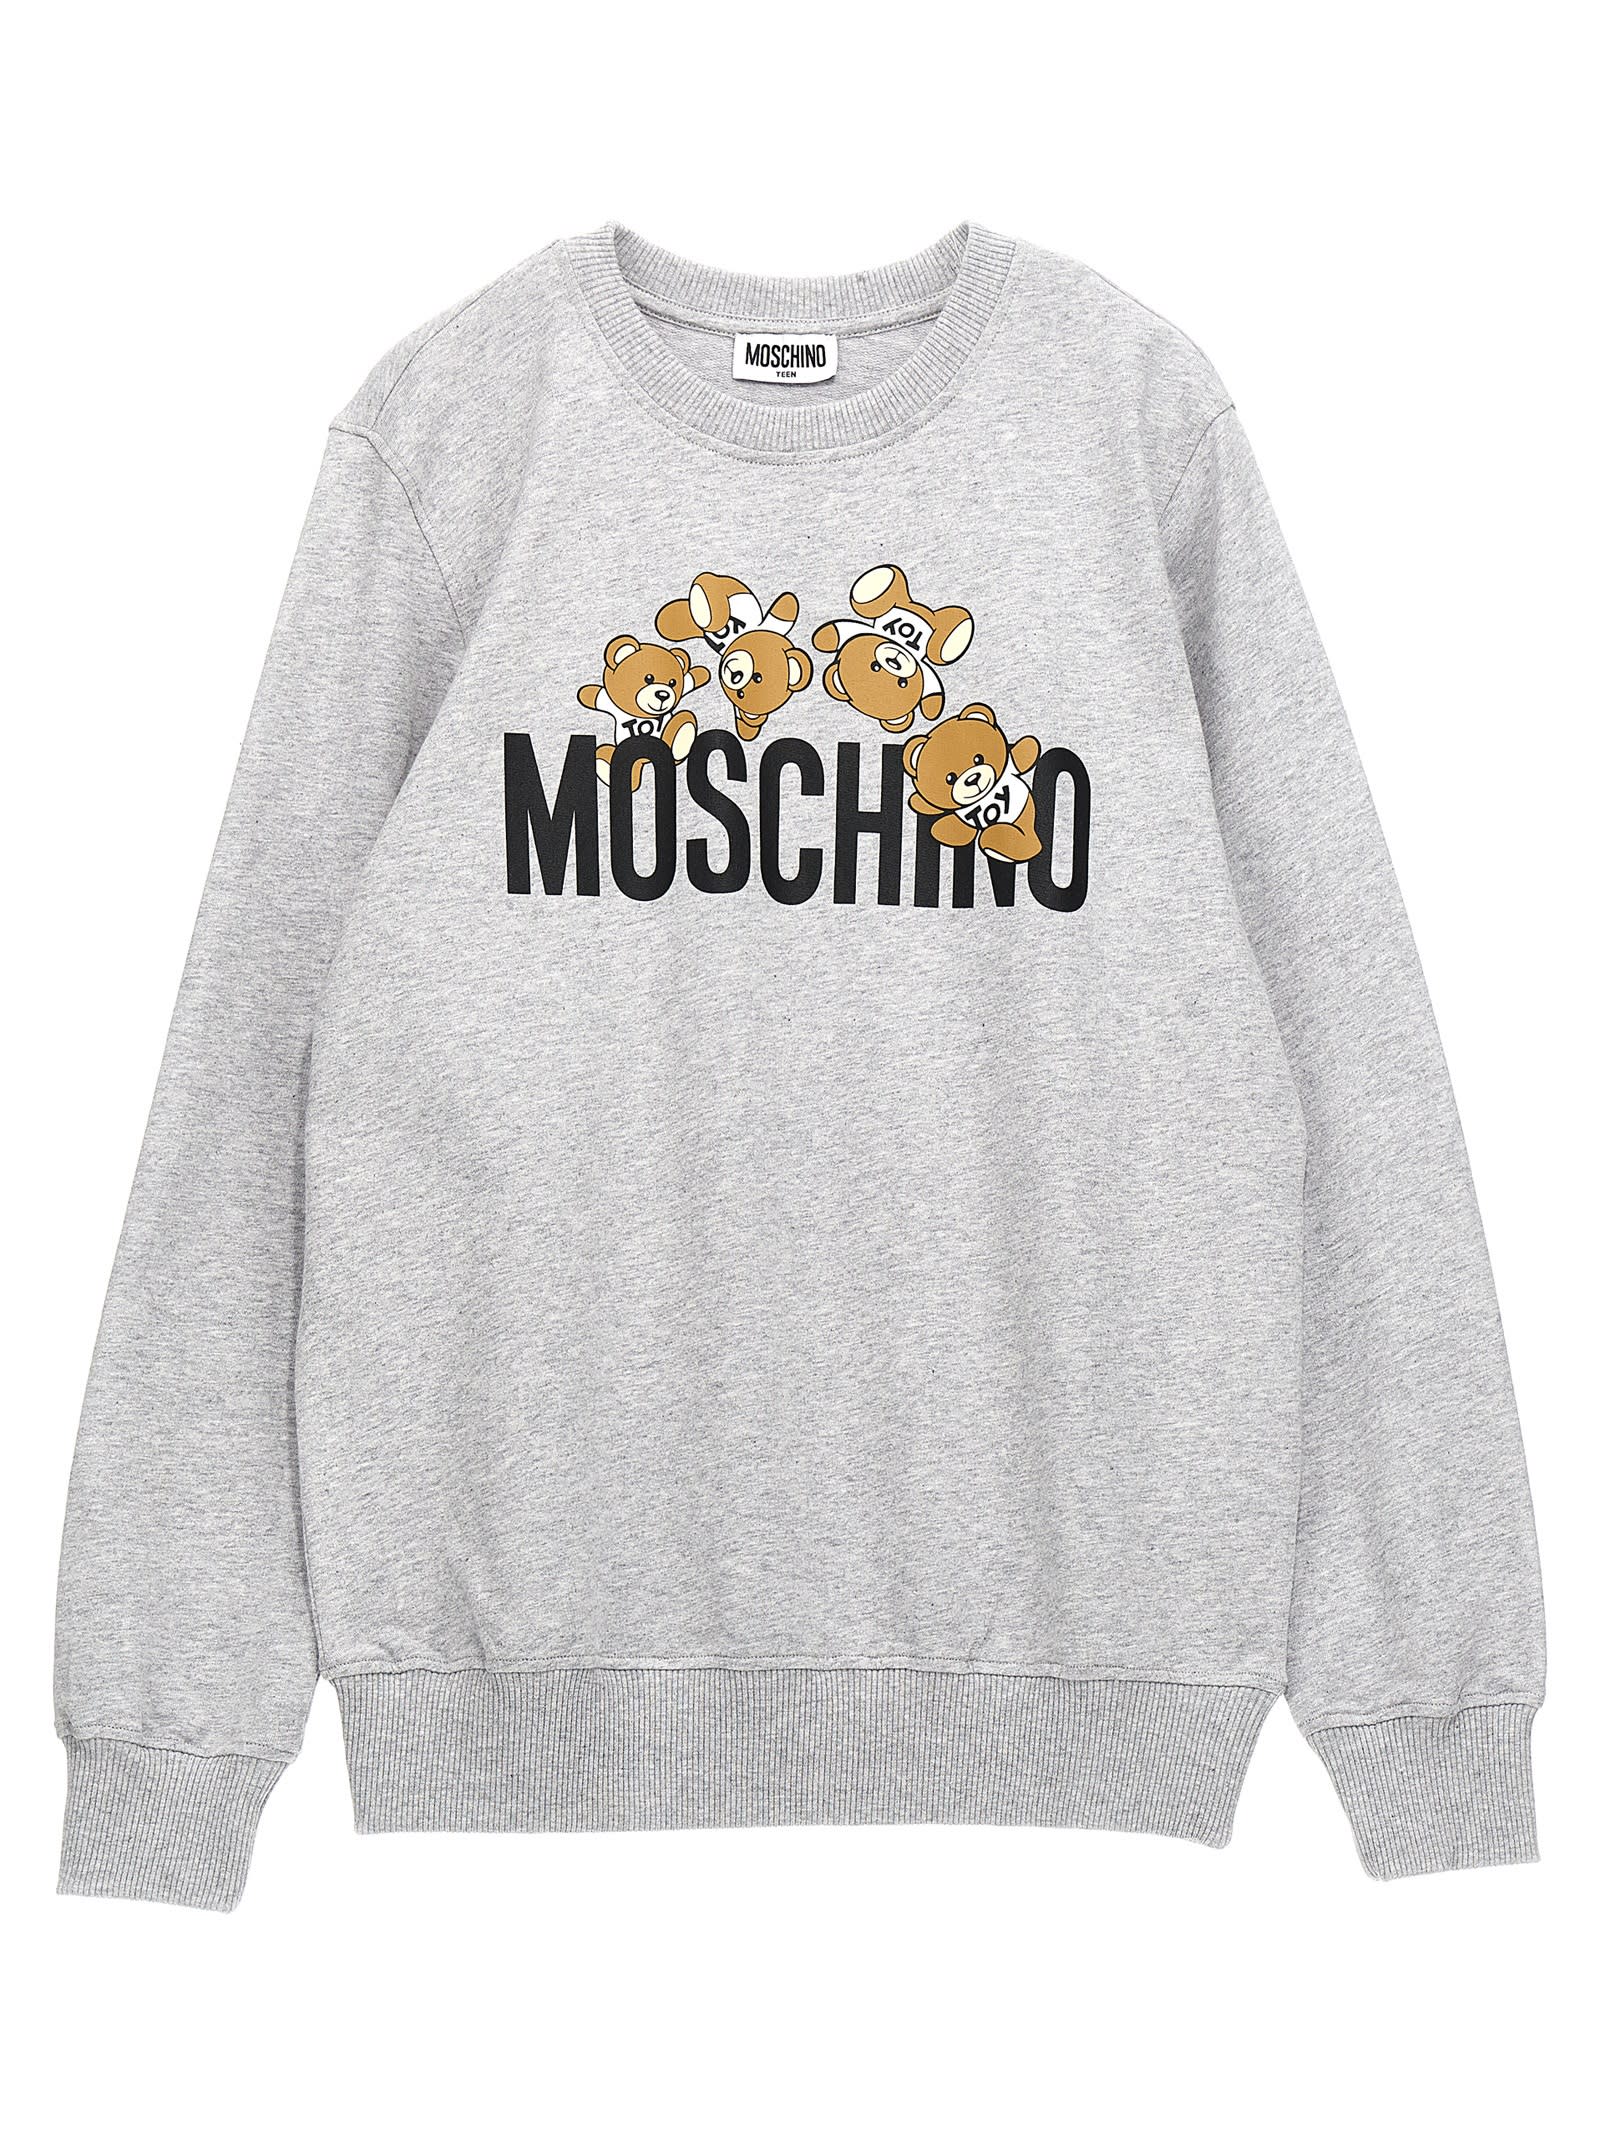 Moschino Kids' Logo Print Sweatshirt In Gray